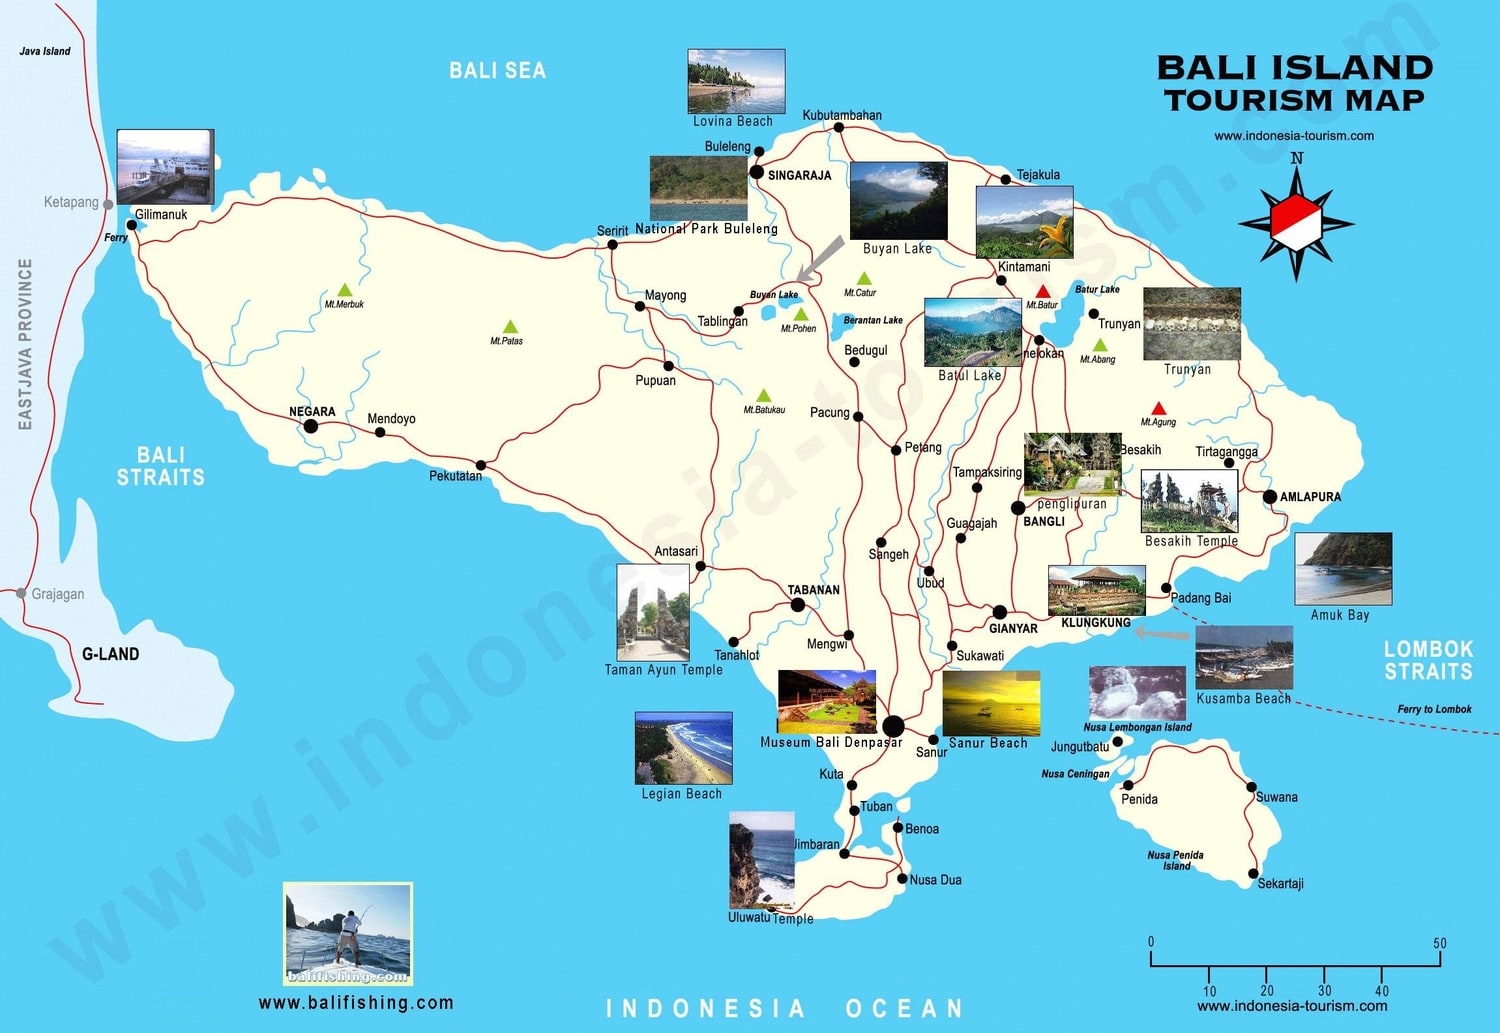 Mapa turistico de Bali con fotografias de los lugares de internet más importante